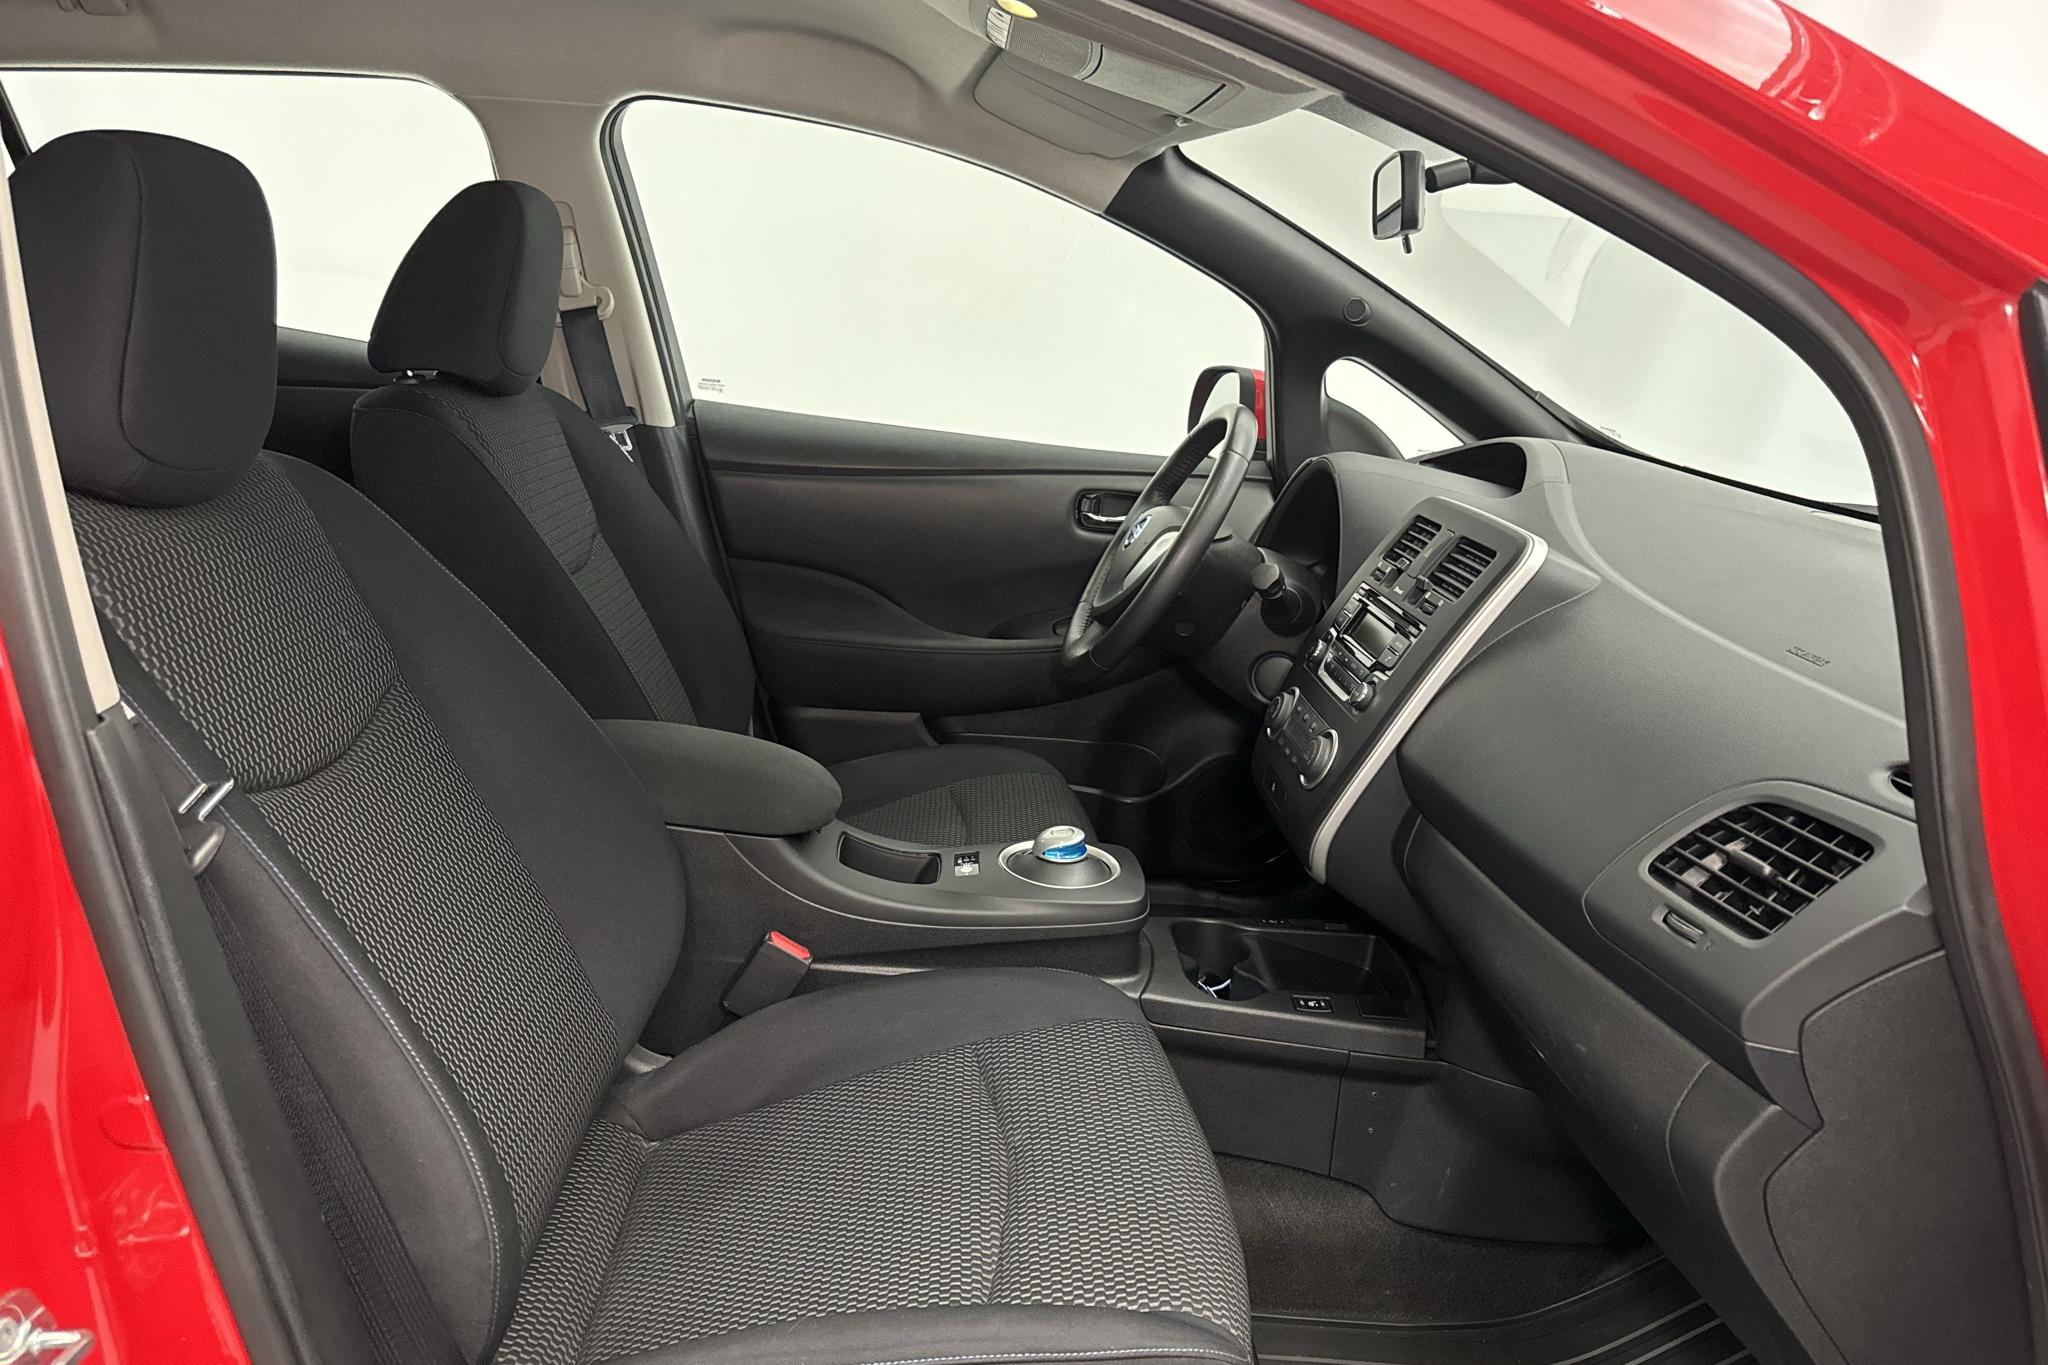 Nissan LEAF 5dr (109hk) - 1 356 mil - Automat - röd - 2017